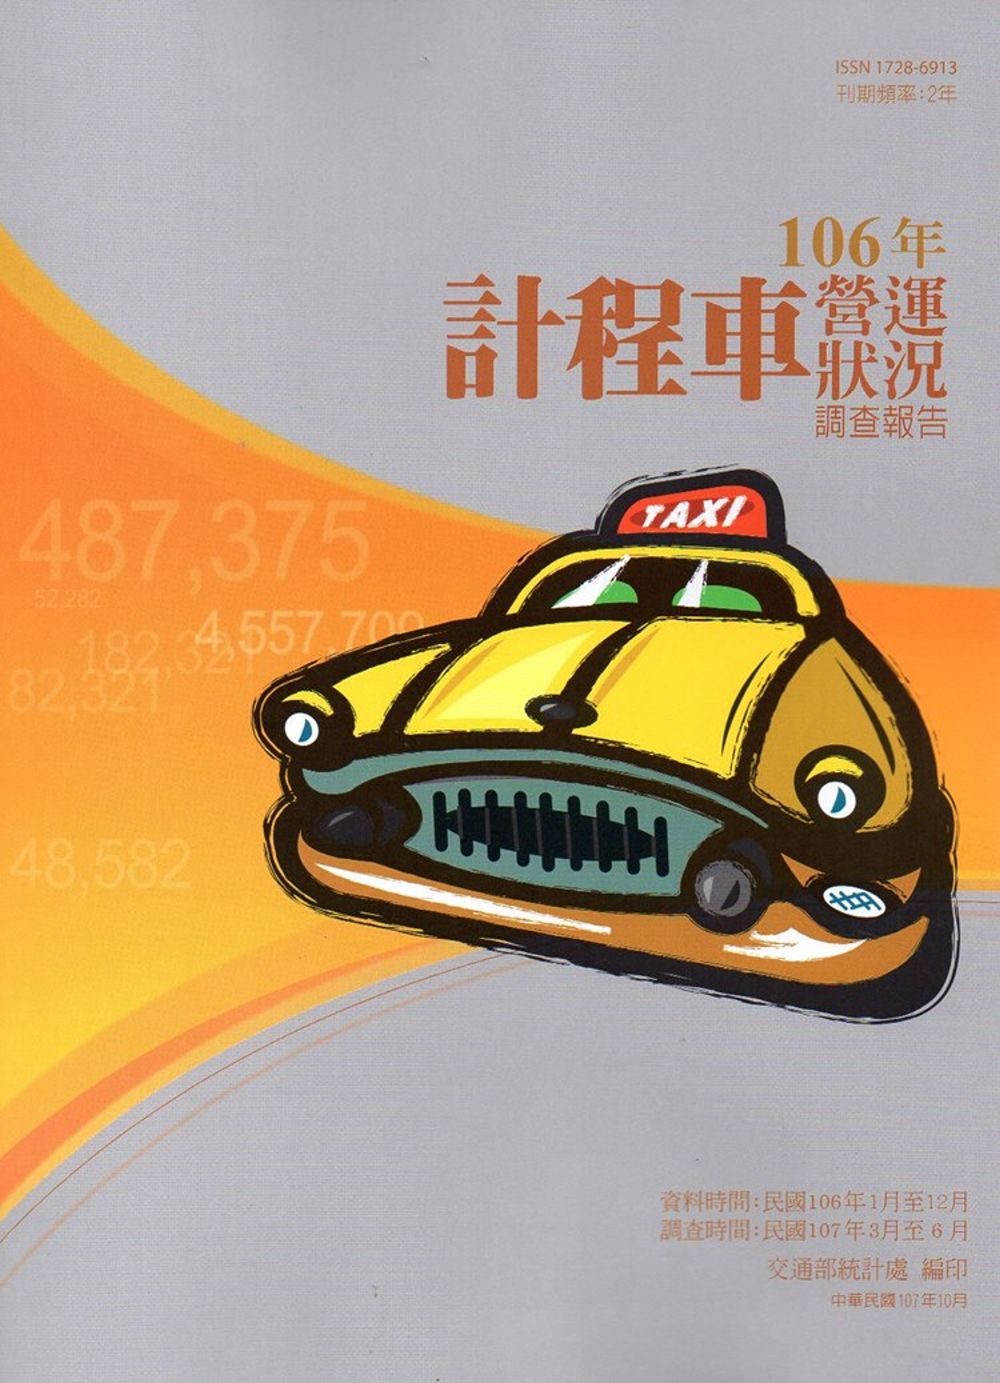 計程車營運狀況調查報告106年